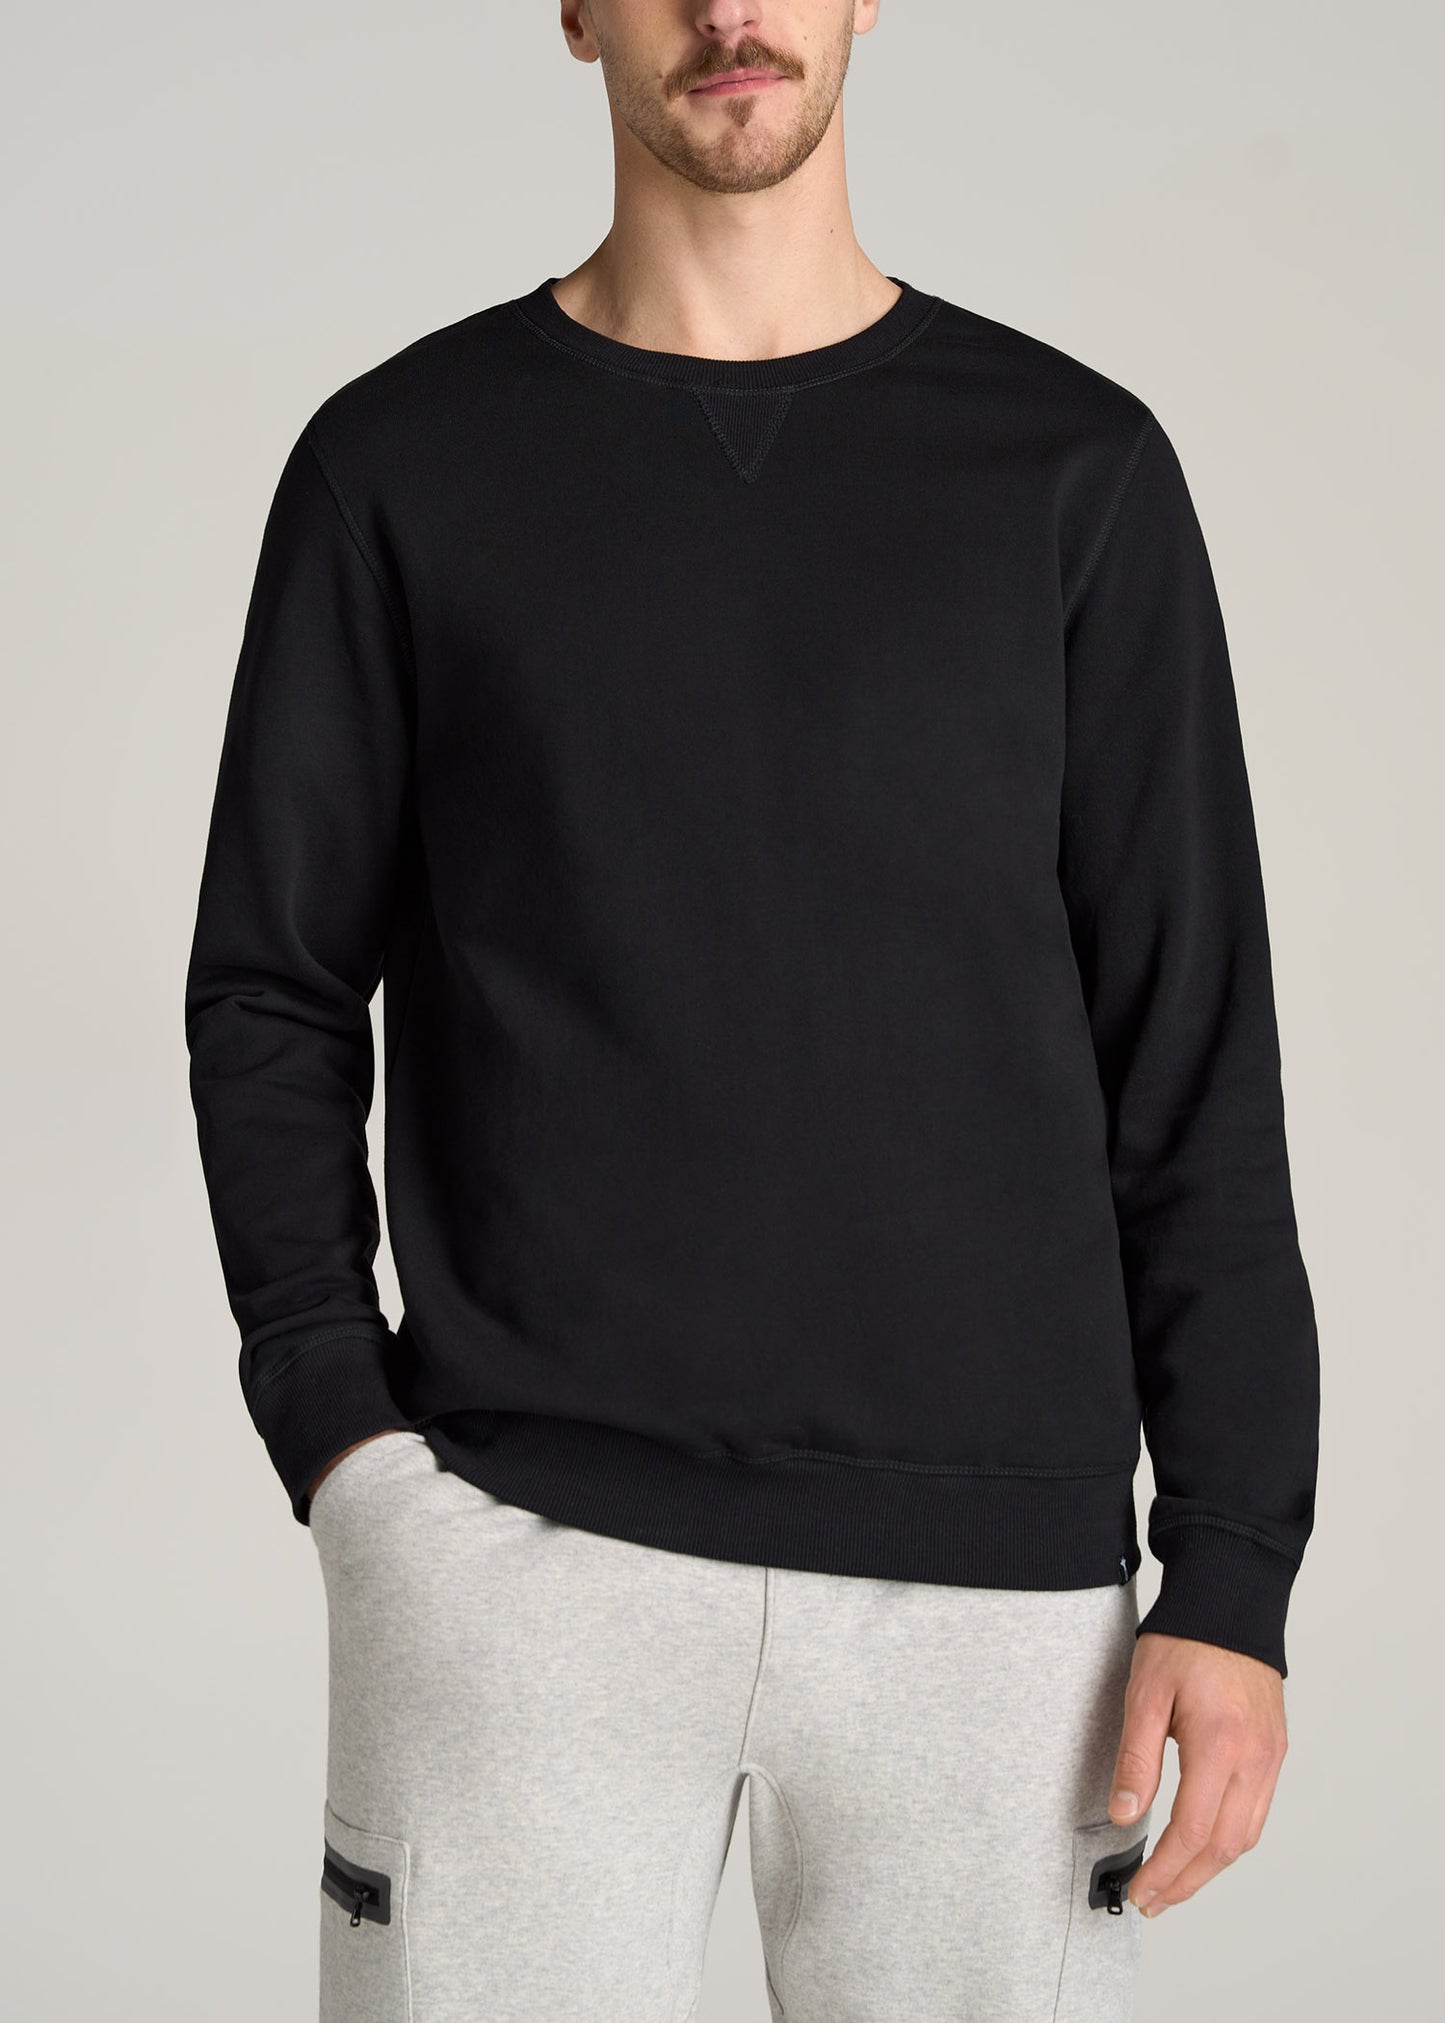 Wearever Fleece Crewneck Tall Men's Sweatshirt in Grey Mix